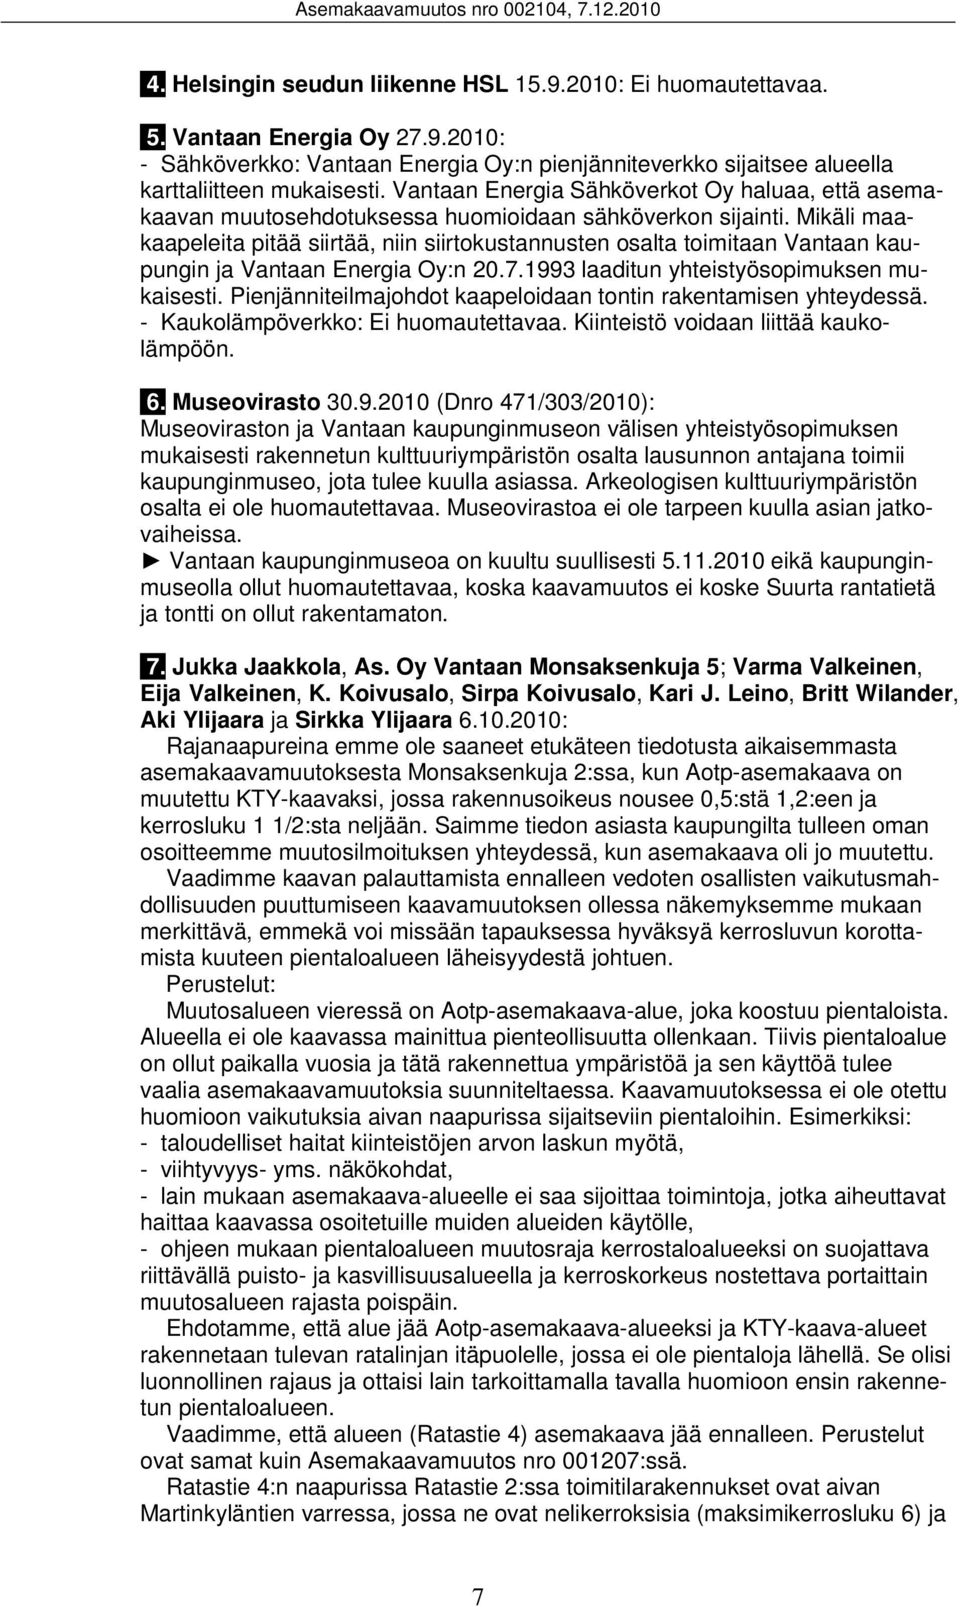 Mikäli maakaapeleita pitää siirtää, niin siirtokustannusten osalta toimitaan Vantaan kaupungin ja Vantaan Energia Oy:n 20.7.1993 laaditun yhteistyösopimuksen mukaisesti.